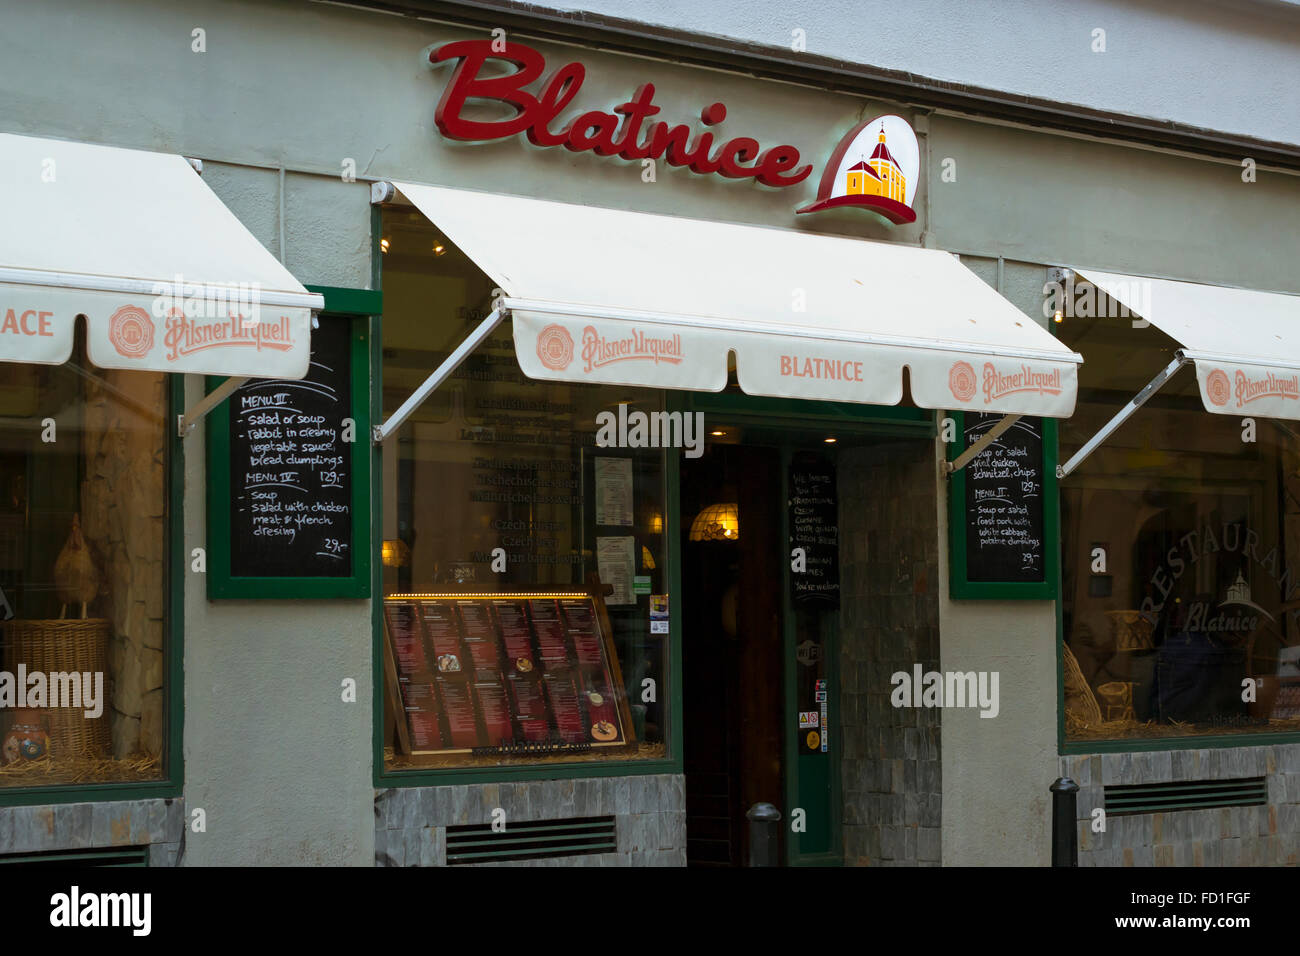 PRAGUE, CZECH REPUBLIC - AUGUST 28, 2015: Facade of the restaurant Blatnice in old Town Prague, Czech Republic Stock Photo